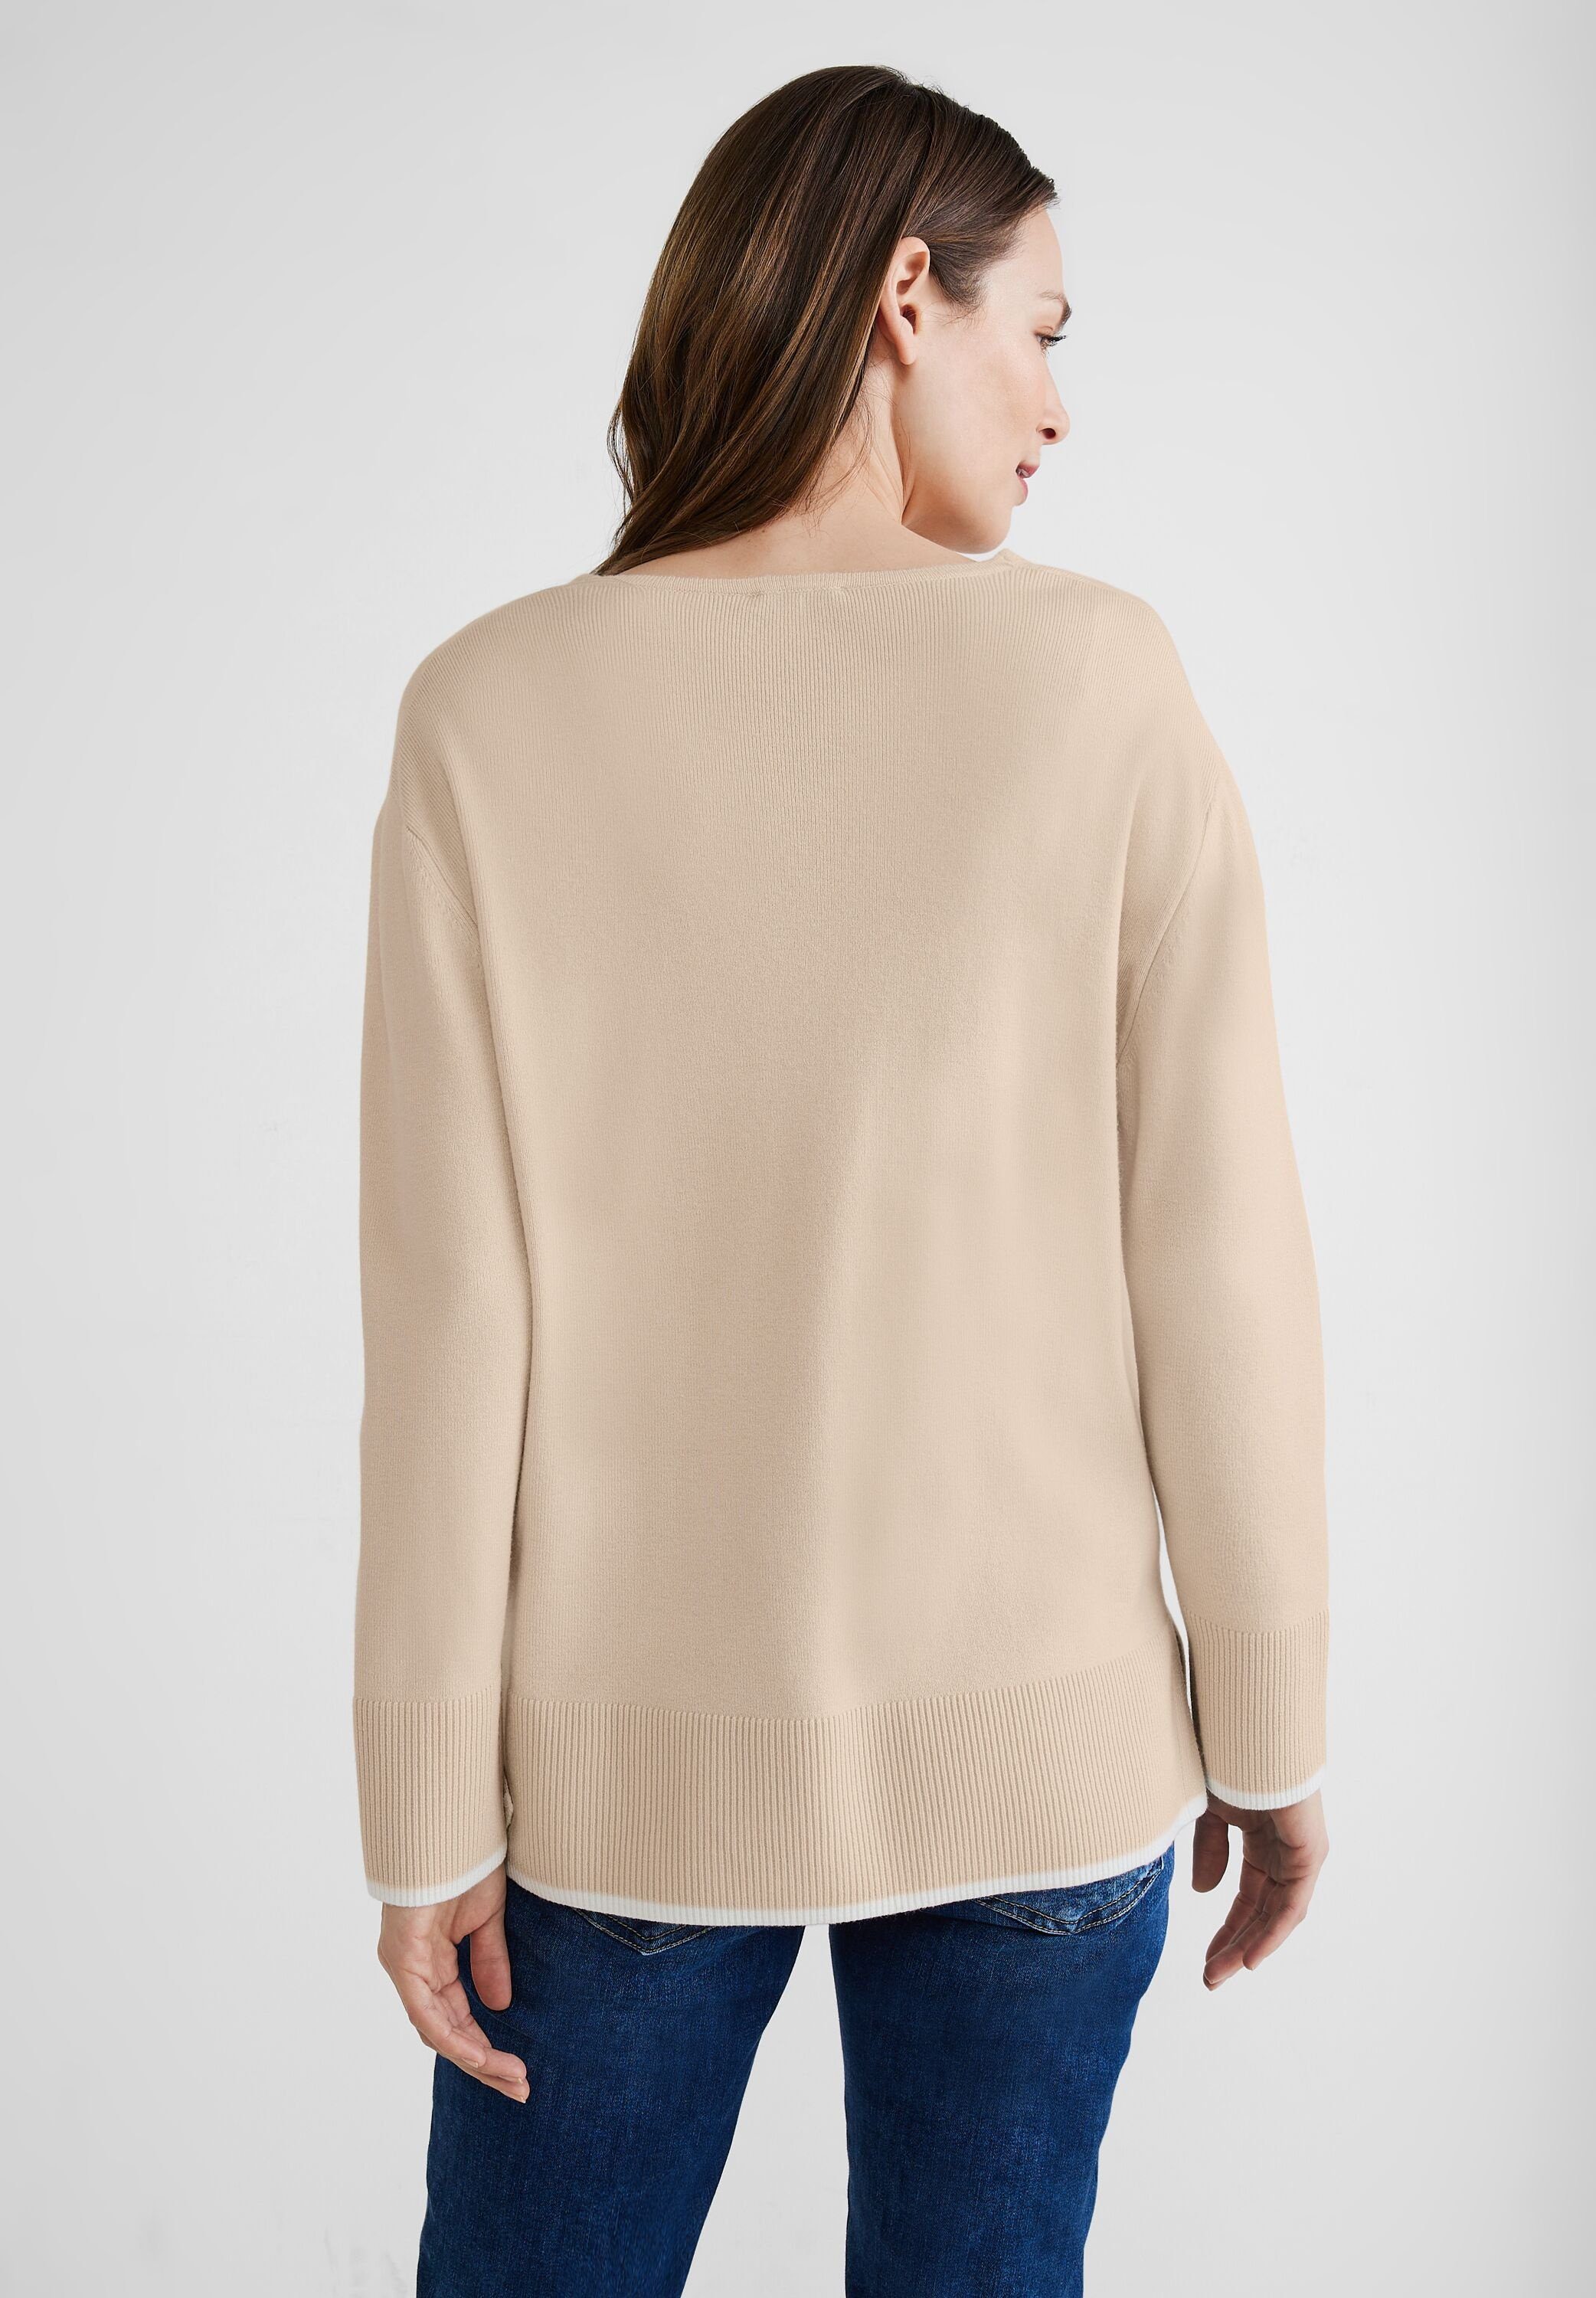 ONE mit Pullover V-Ausschnitt-Pullover V-Ausschnitt light smooth STREET sand